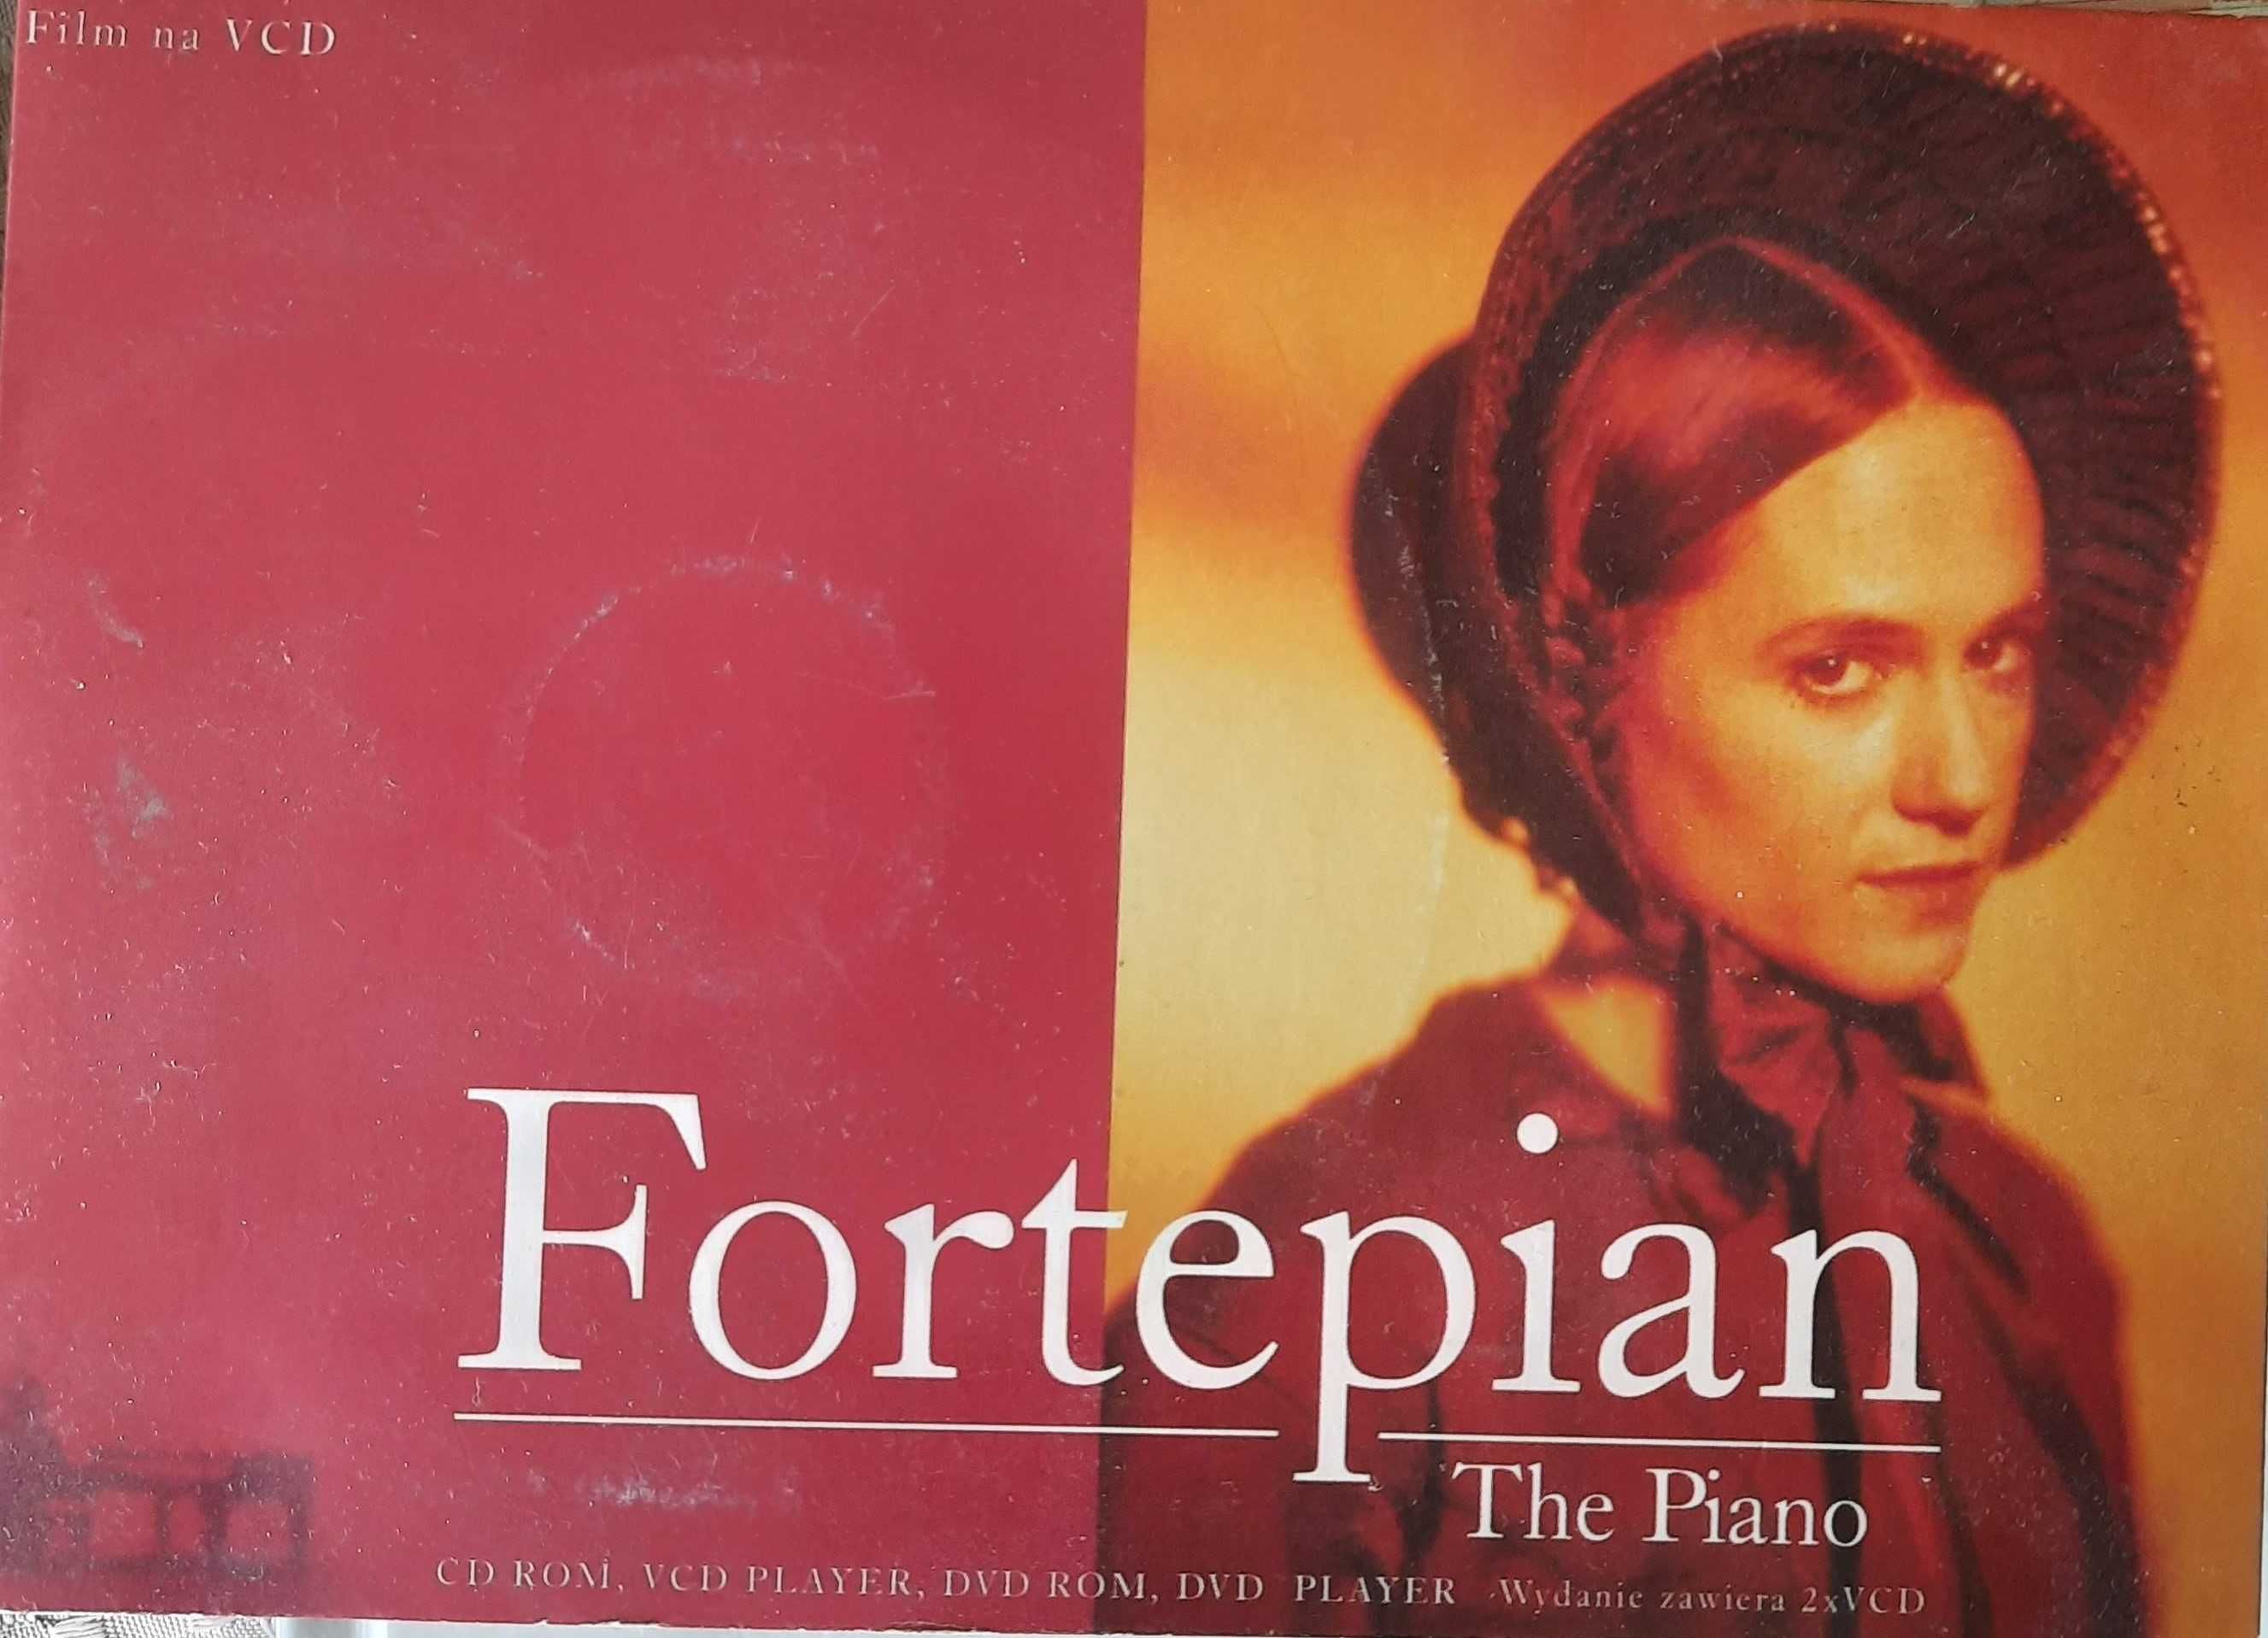 Fortepian, The piano DVD